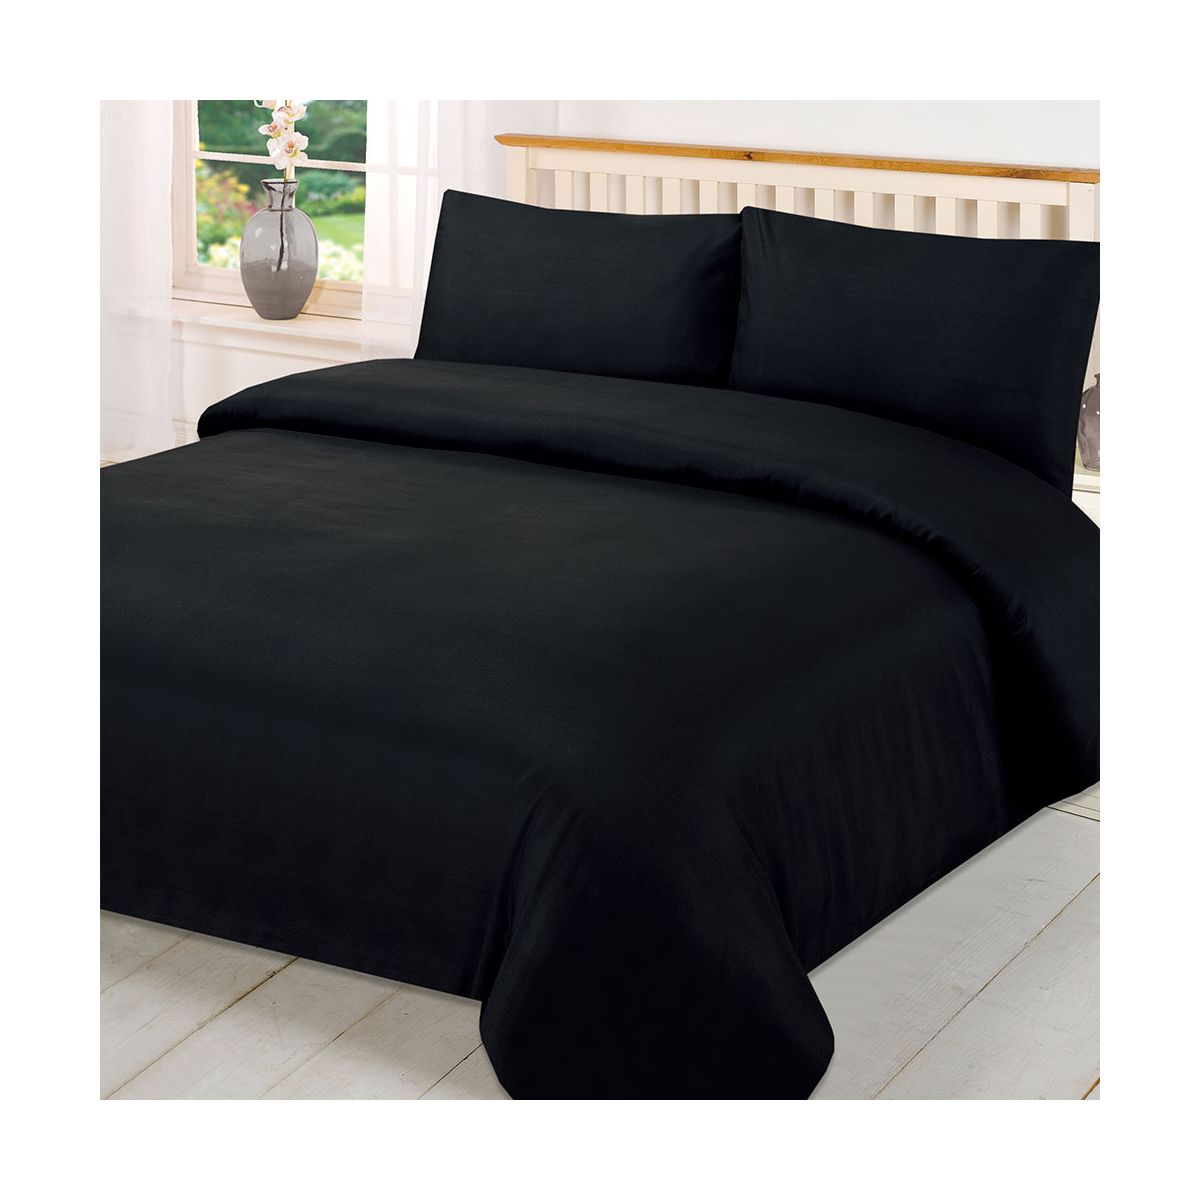 Brentfords Plain Duvet Cover Quilt with Pillowcases - Black, Super King